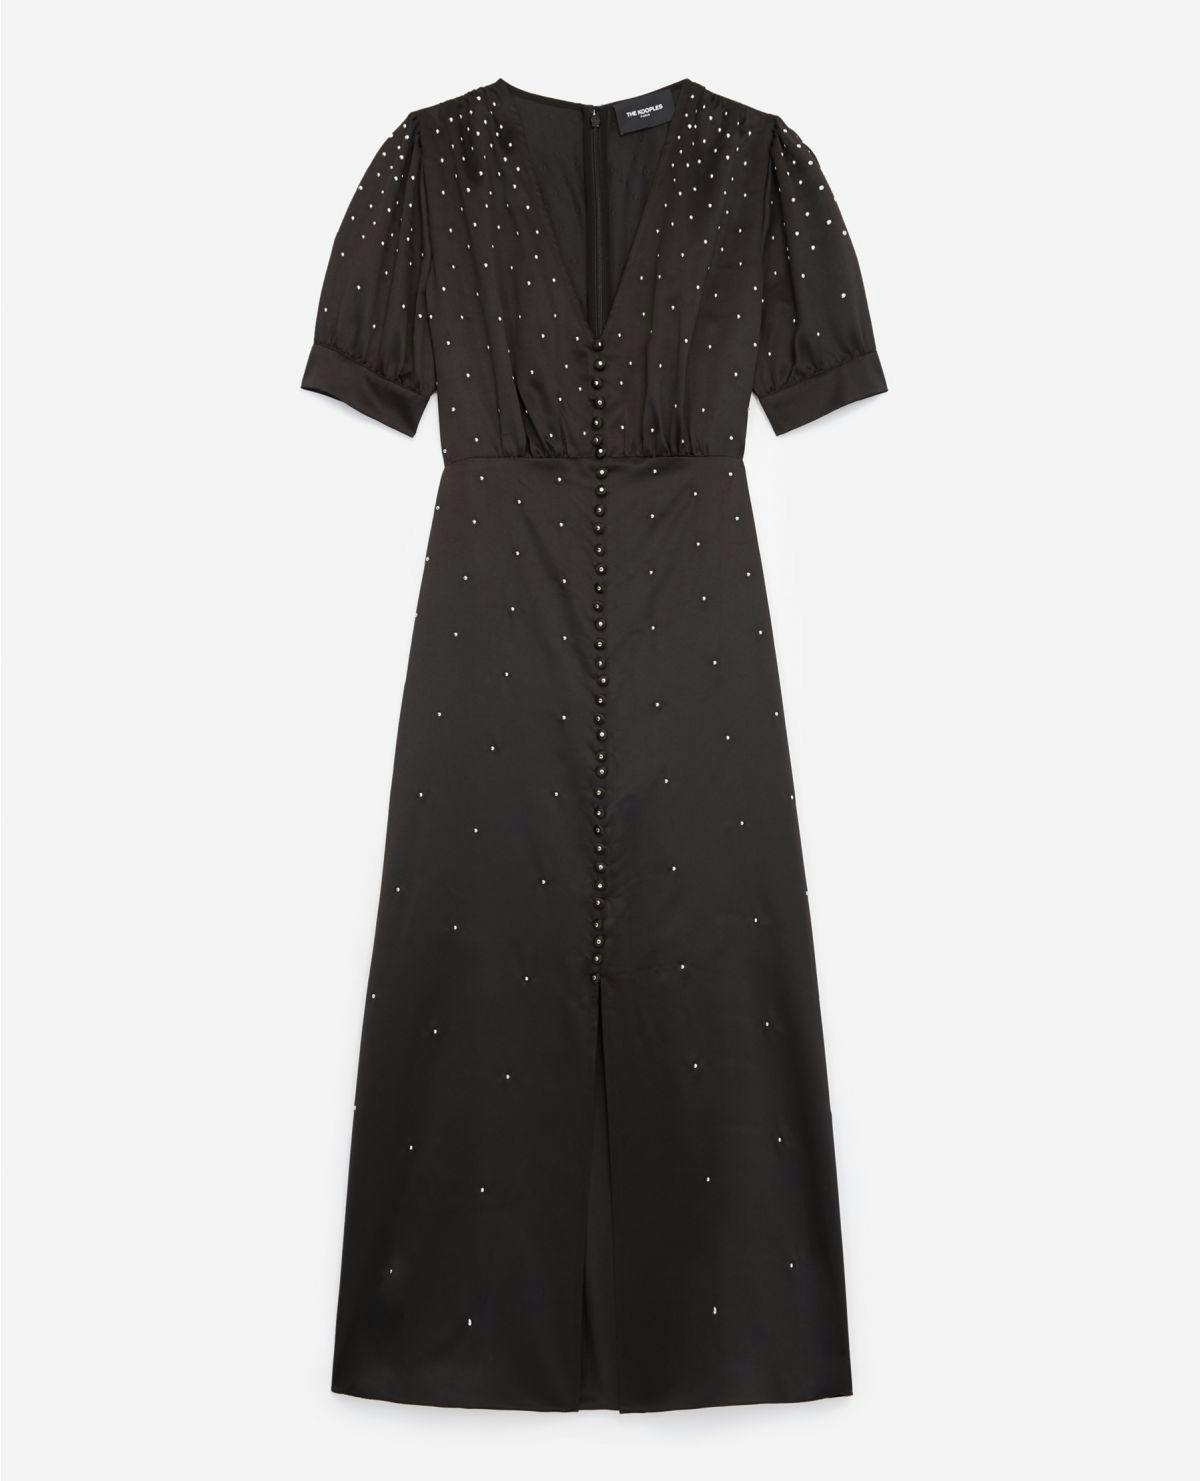 Best dresses for Christmas day: The Kooples black beaded tea dress